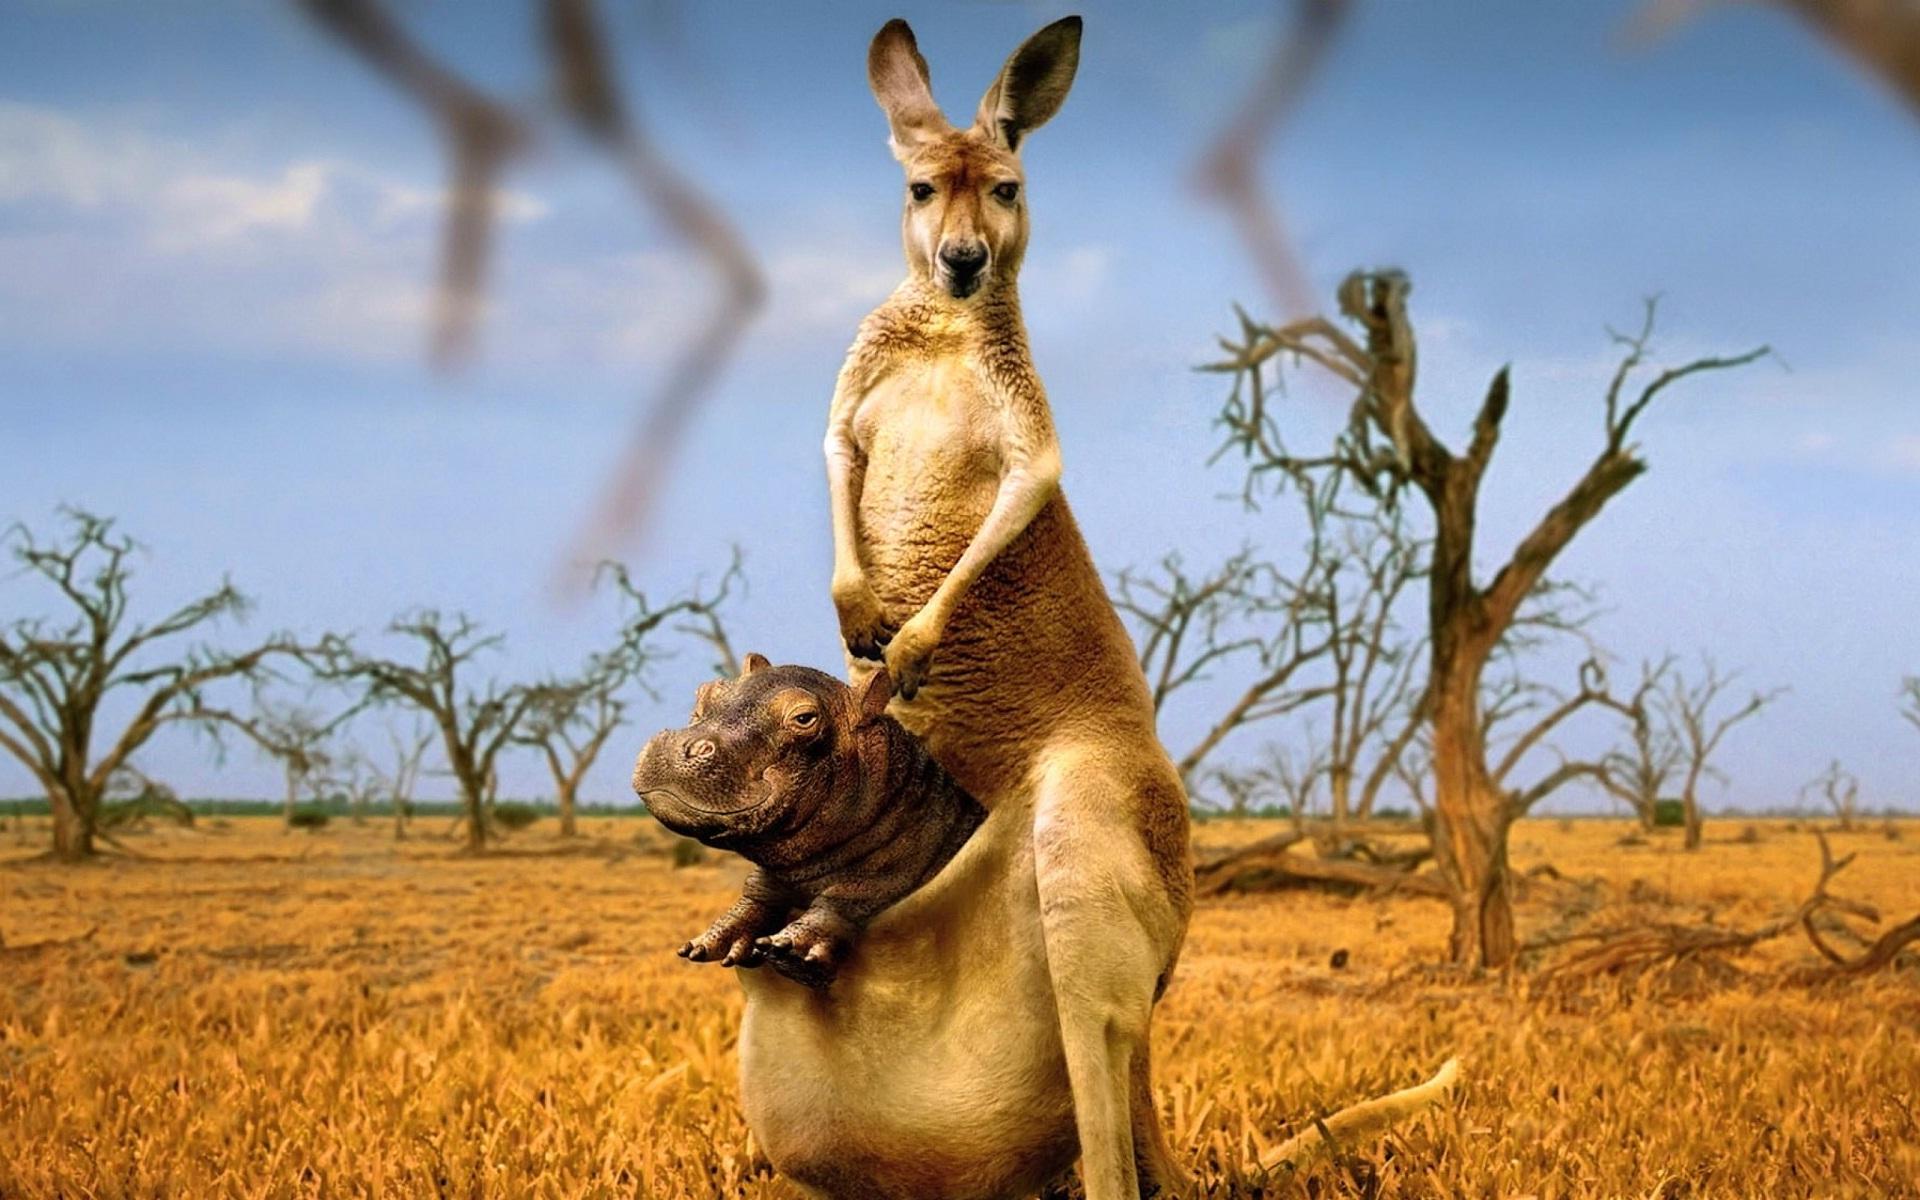 Kangaroo Wallpaper Images  Free Download on Freepik